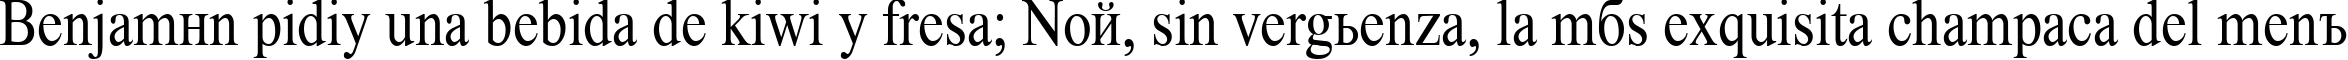 Пример написания шрифтом Time Roman85n текста на испанском